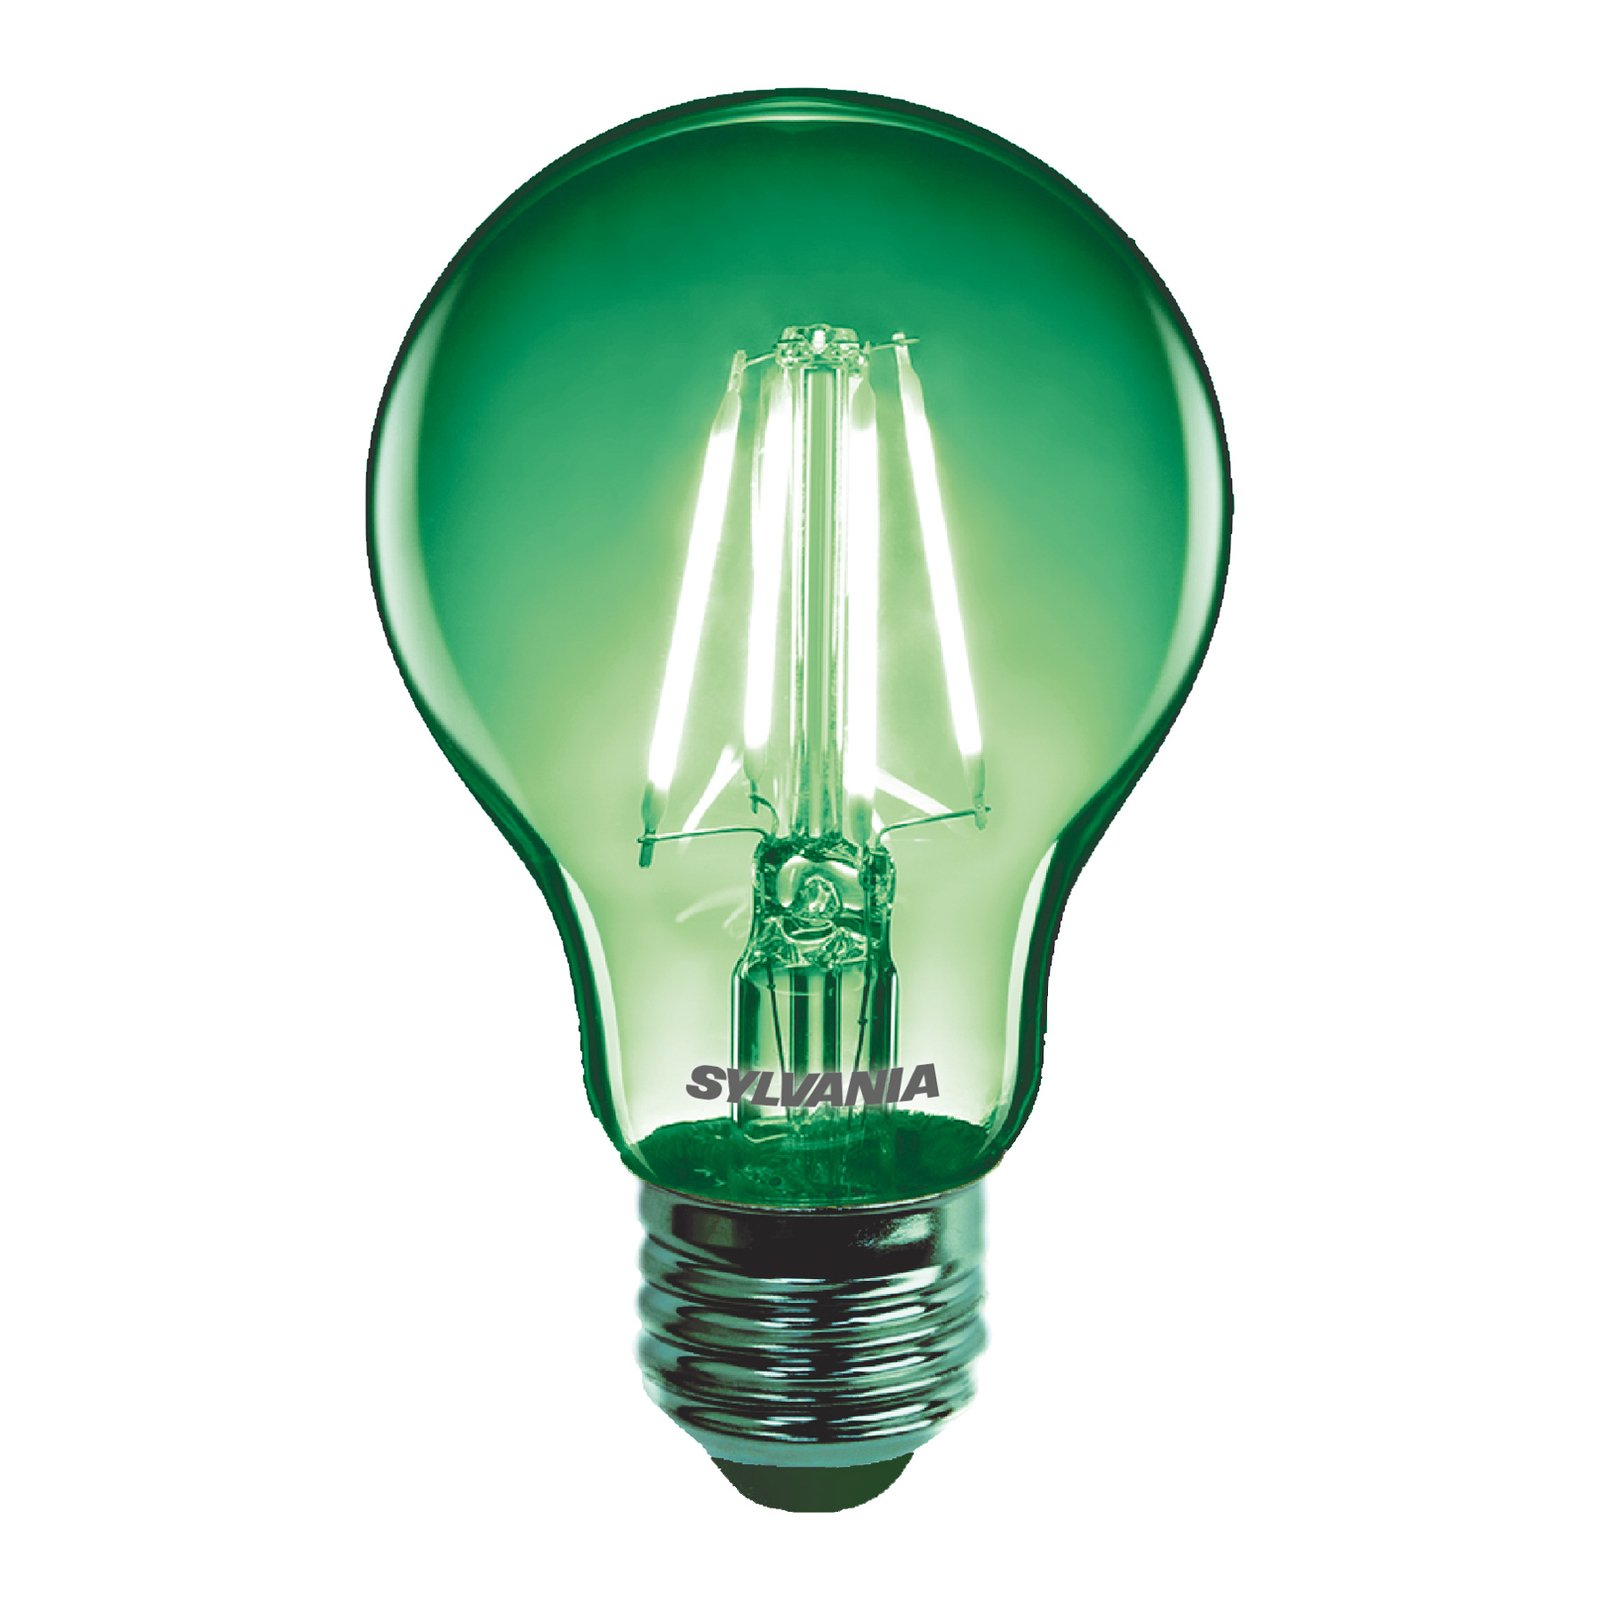 Sylvania ToLEDo Retro bombilla LED E27 4,1W verde